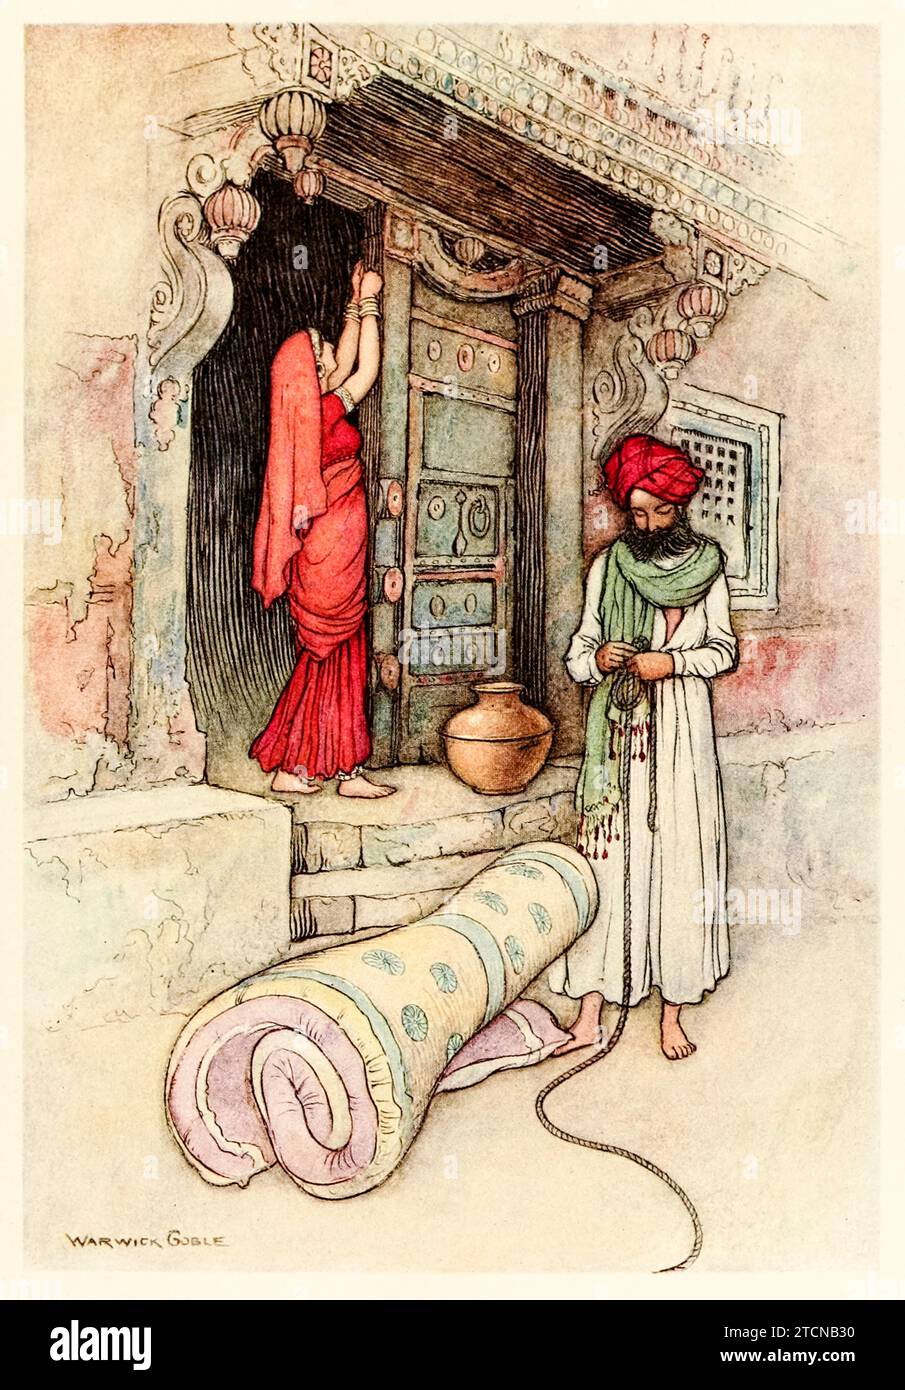 « Puis ils partent de leur voyage » de « Folk-Tales of Bengal » de Lal Behari Day (1824-1882), illustration de Warwick Goble (1862-1972). Photographie tirée d'une édition de 1912. Crédit : Collection privée / AF Fotografie Banque D'Images